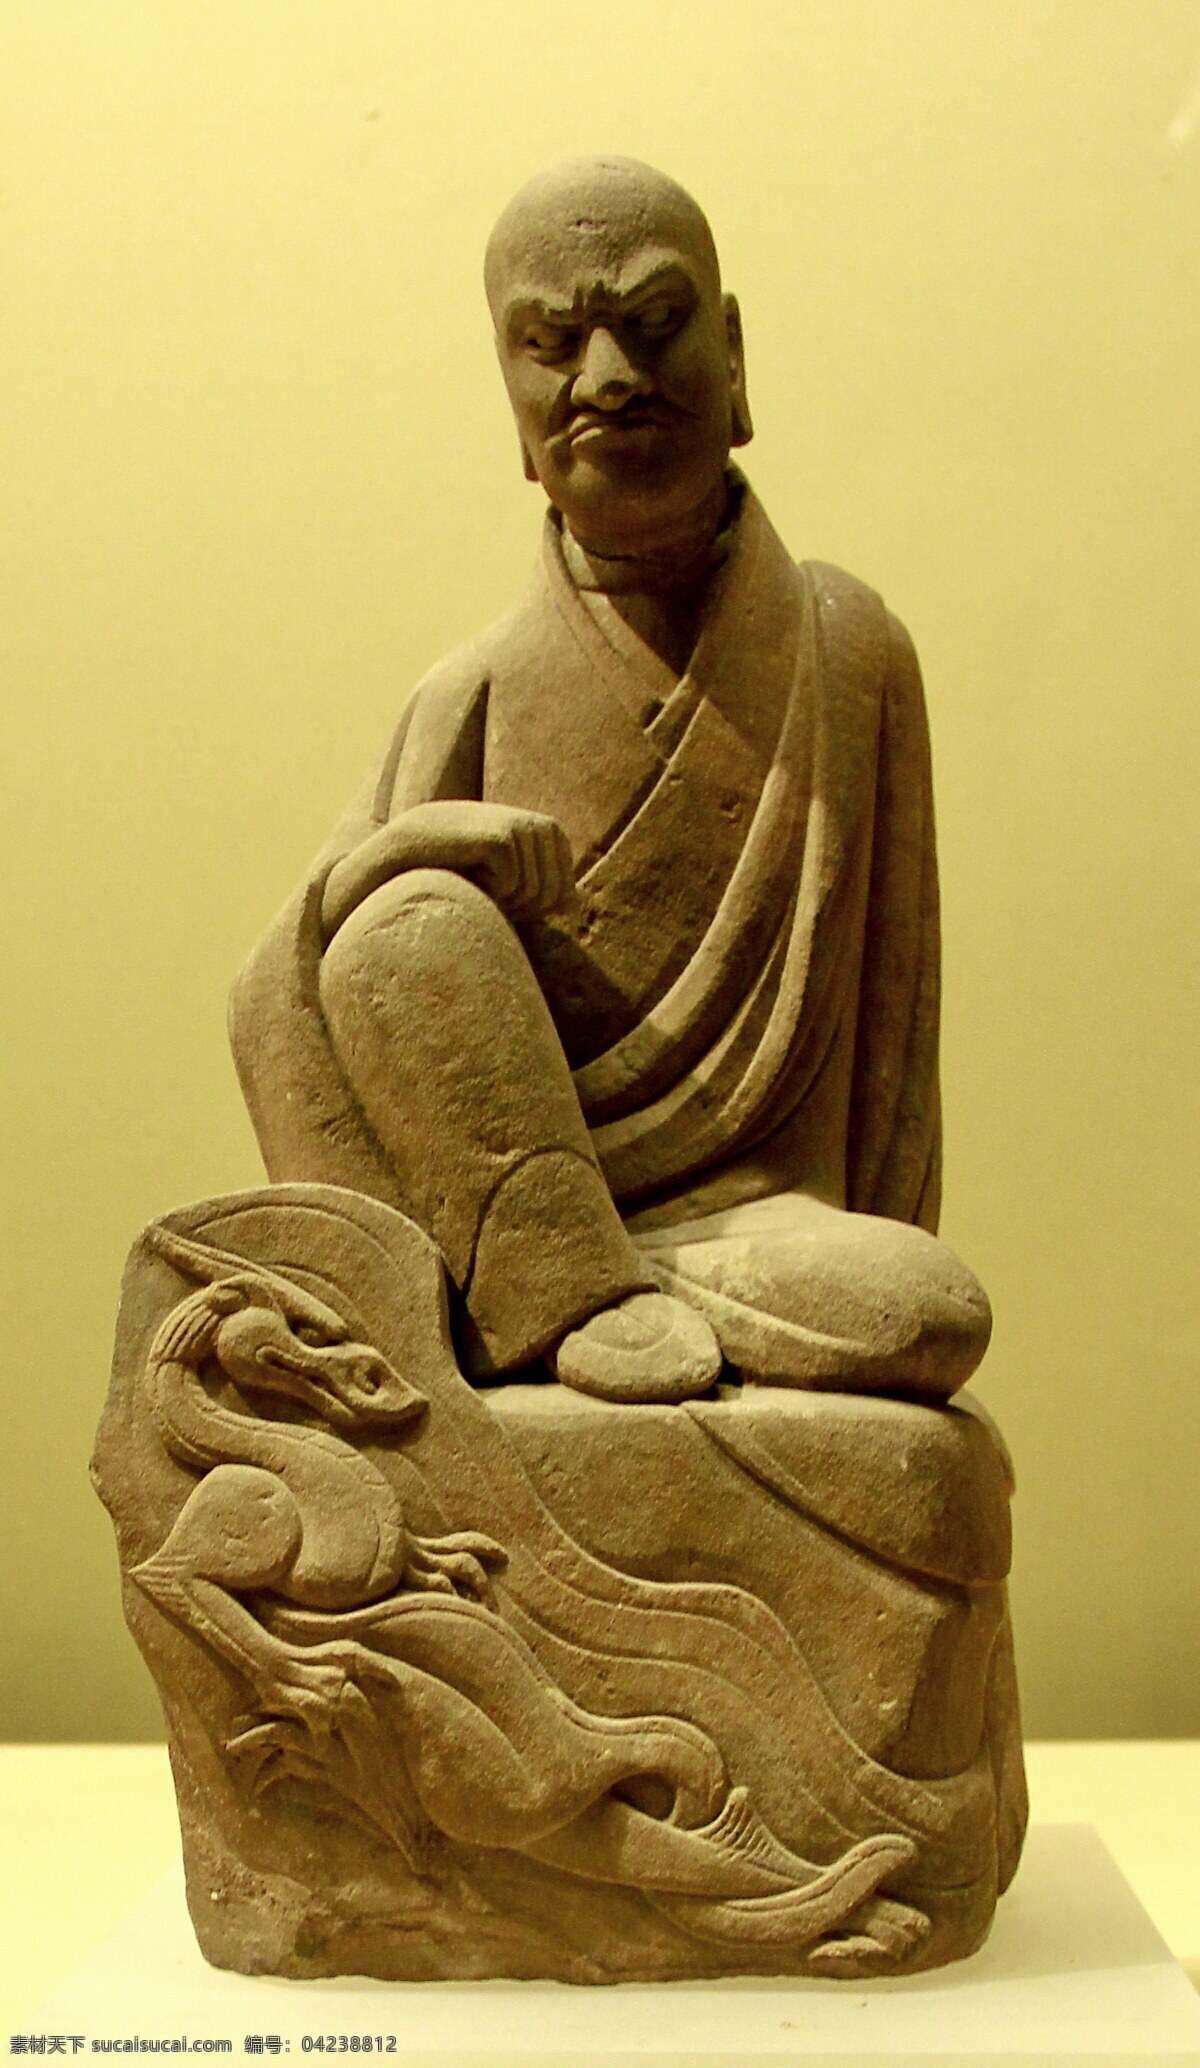 西安 历史博物馆 降龙罗汉 历史博物物馆 降龙 文化 佛教 石像 西安文化 传统文化 文化艺术